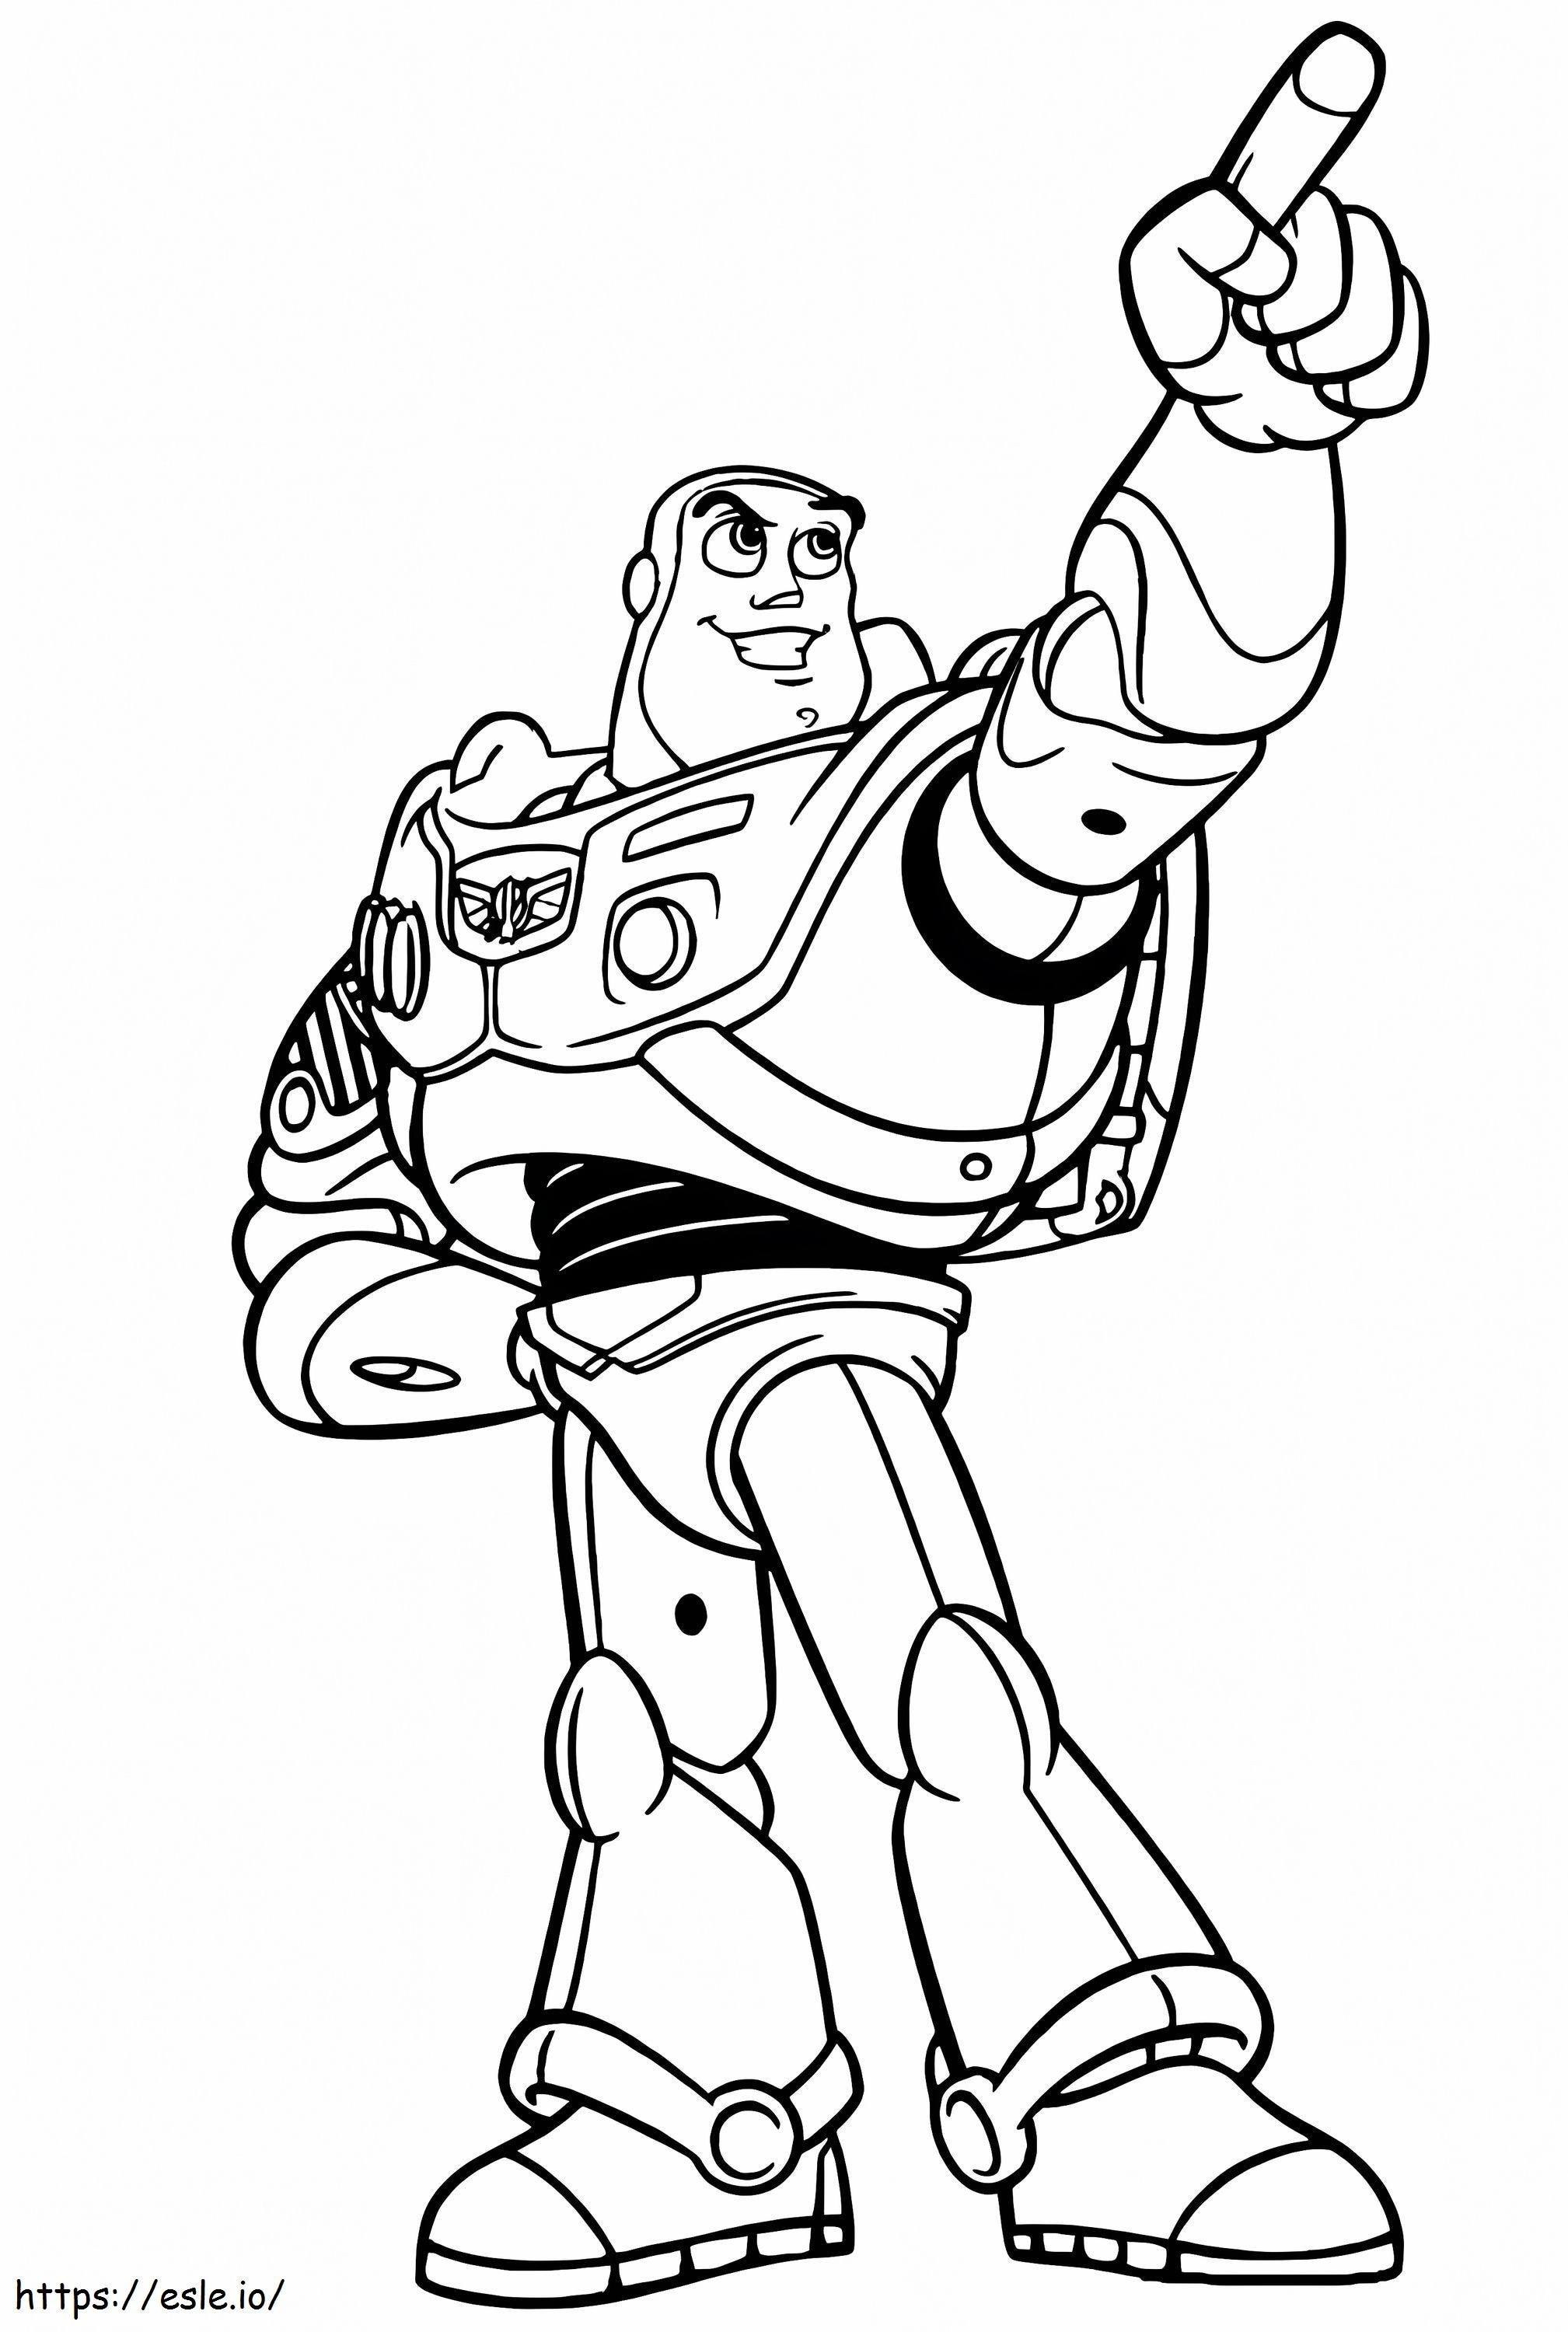 Coloriage Buzz Lightyear pointant la main à imprimer dessin